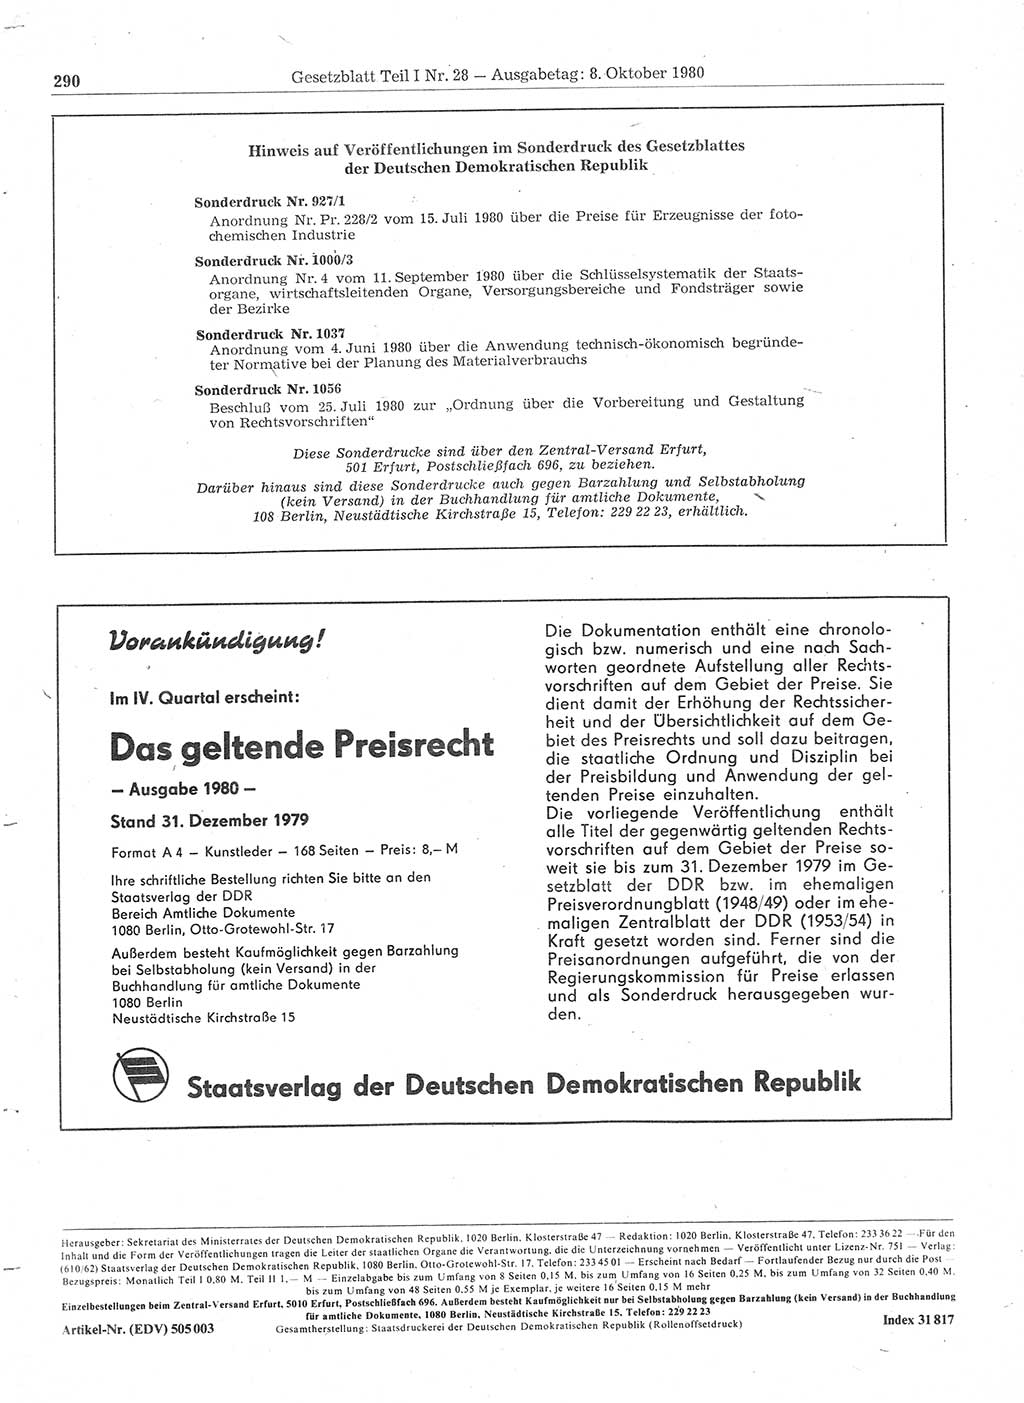 Gesetzblatt (GBl.) der Deutschen Demokratischen Republik (DDR) Teil Ⅰ 1980, Seite 290 (GBl. DDR Ⅰ 1980, S. 290)